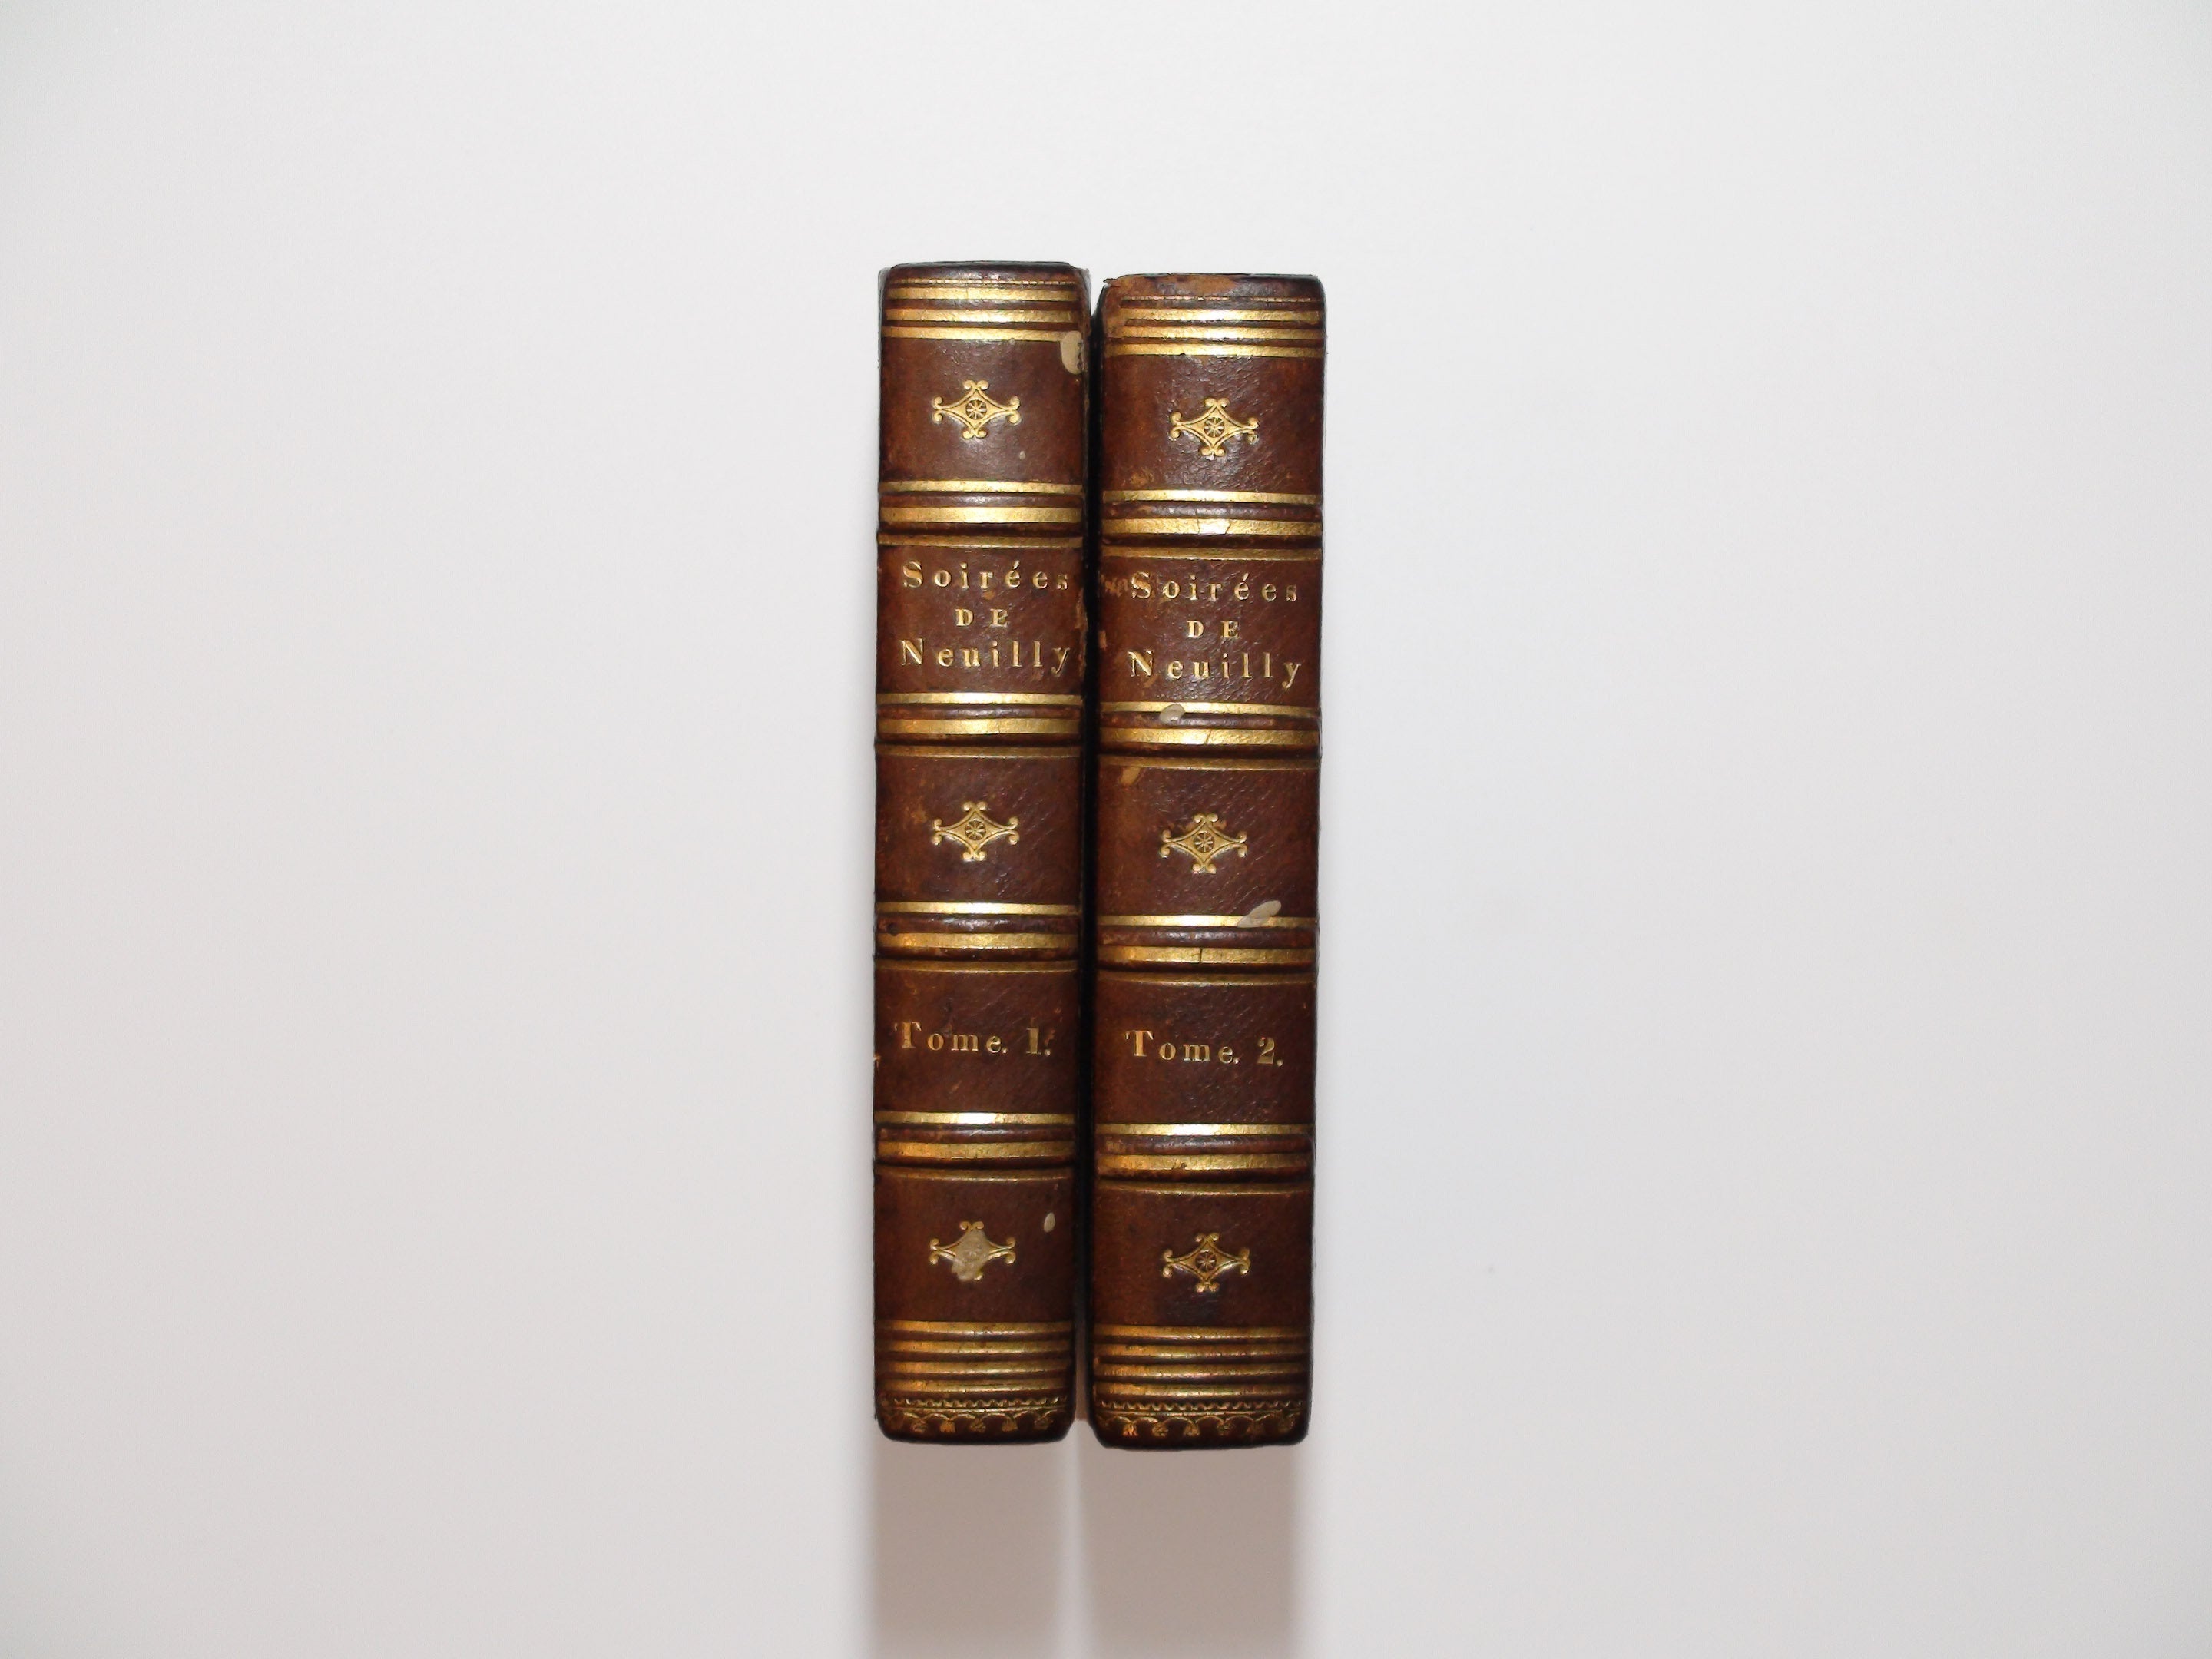 Les Soirées de Neuilly, M. de Fongeray, Two Volumes, French, 1st. Ed., 1828